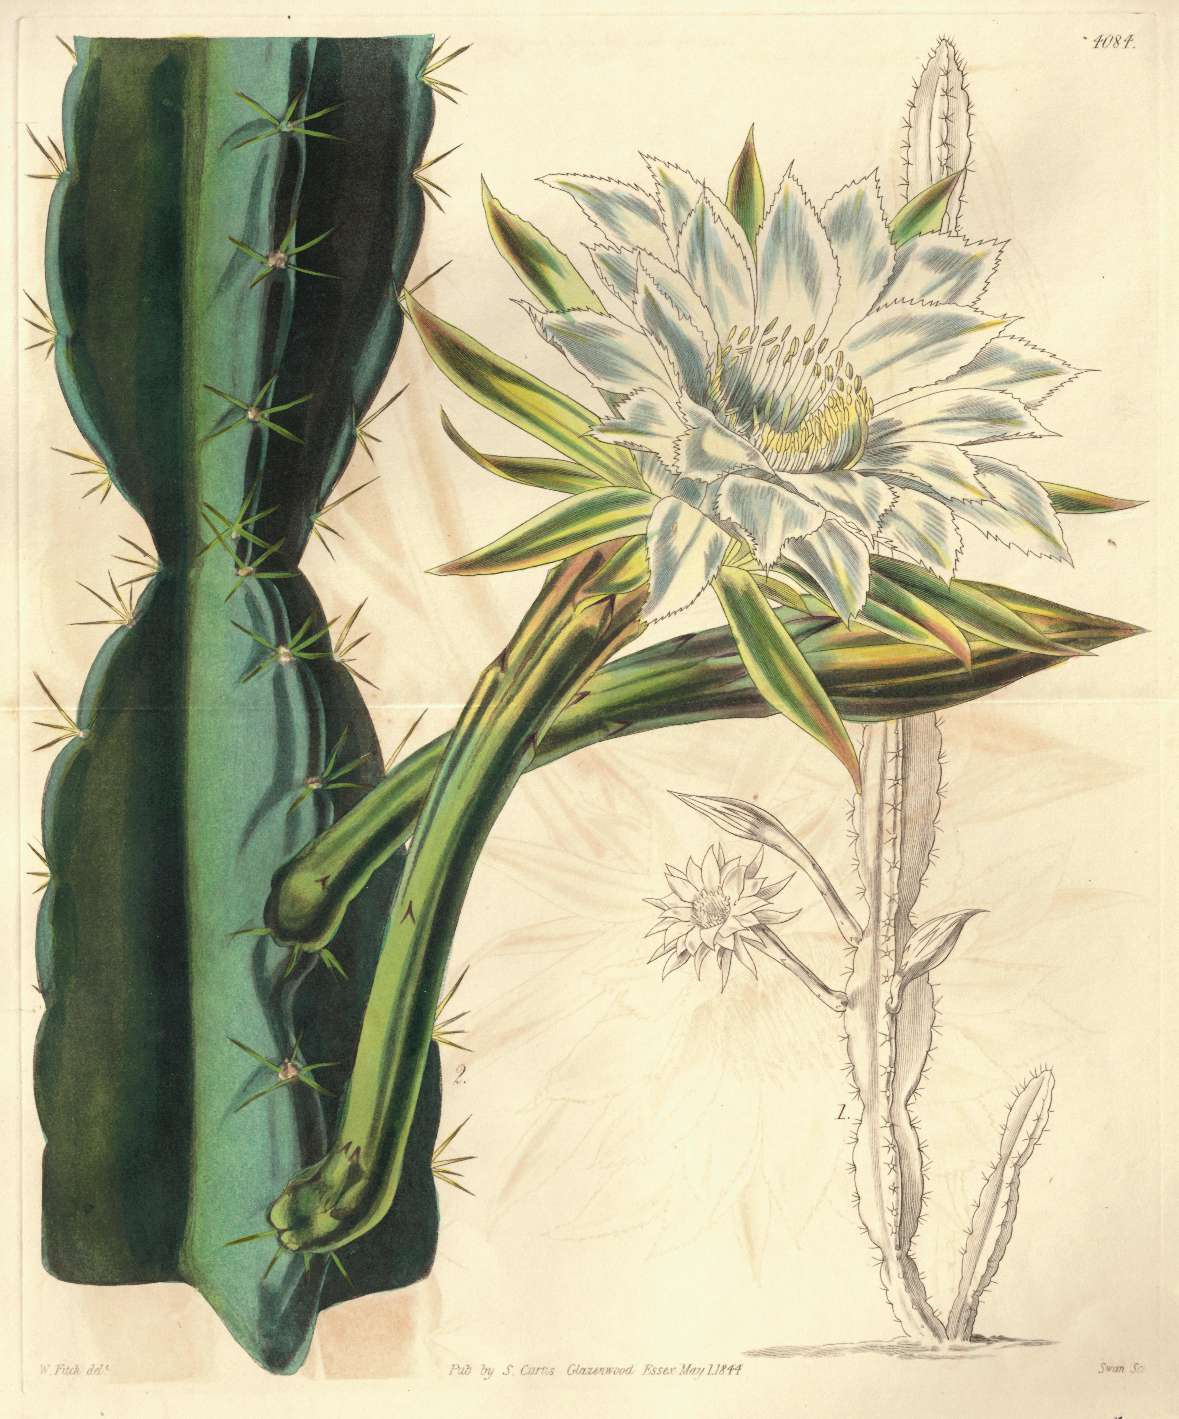 Botanische Zeichnung eines Kaktus aus Pernambuco